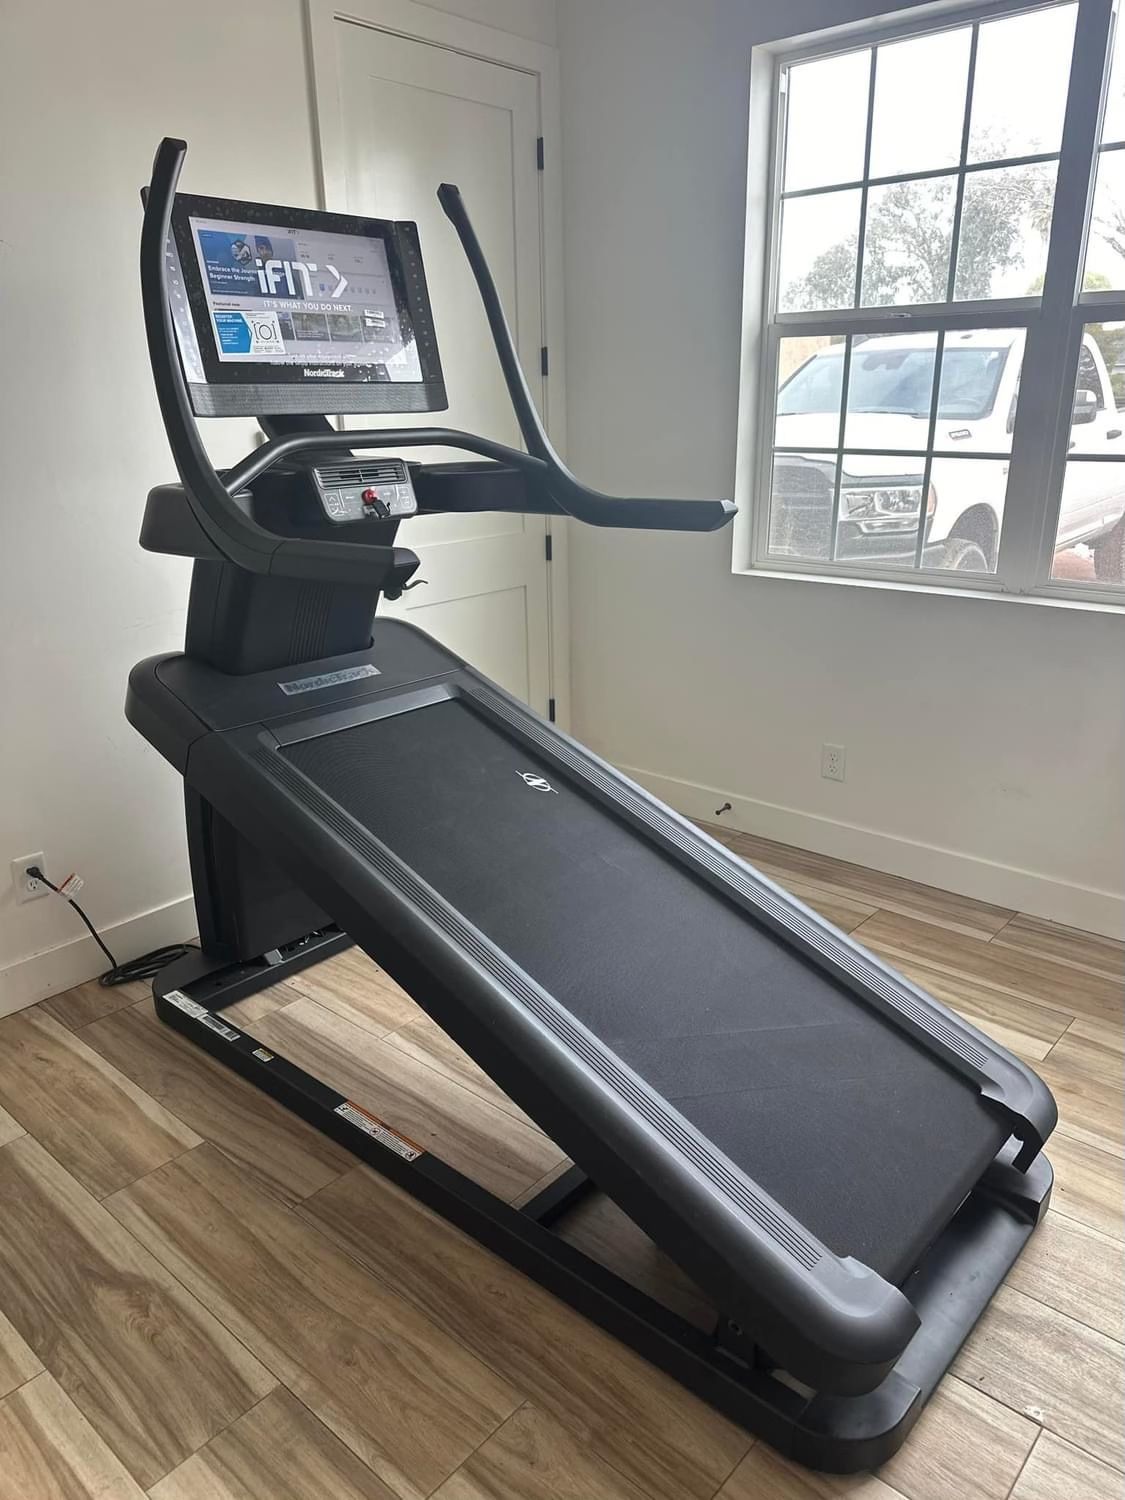 New-In box NordicTrack Elite X22i Treadmill